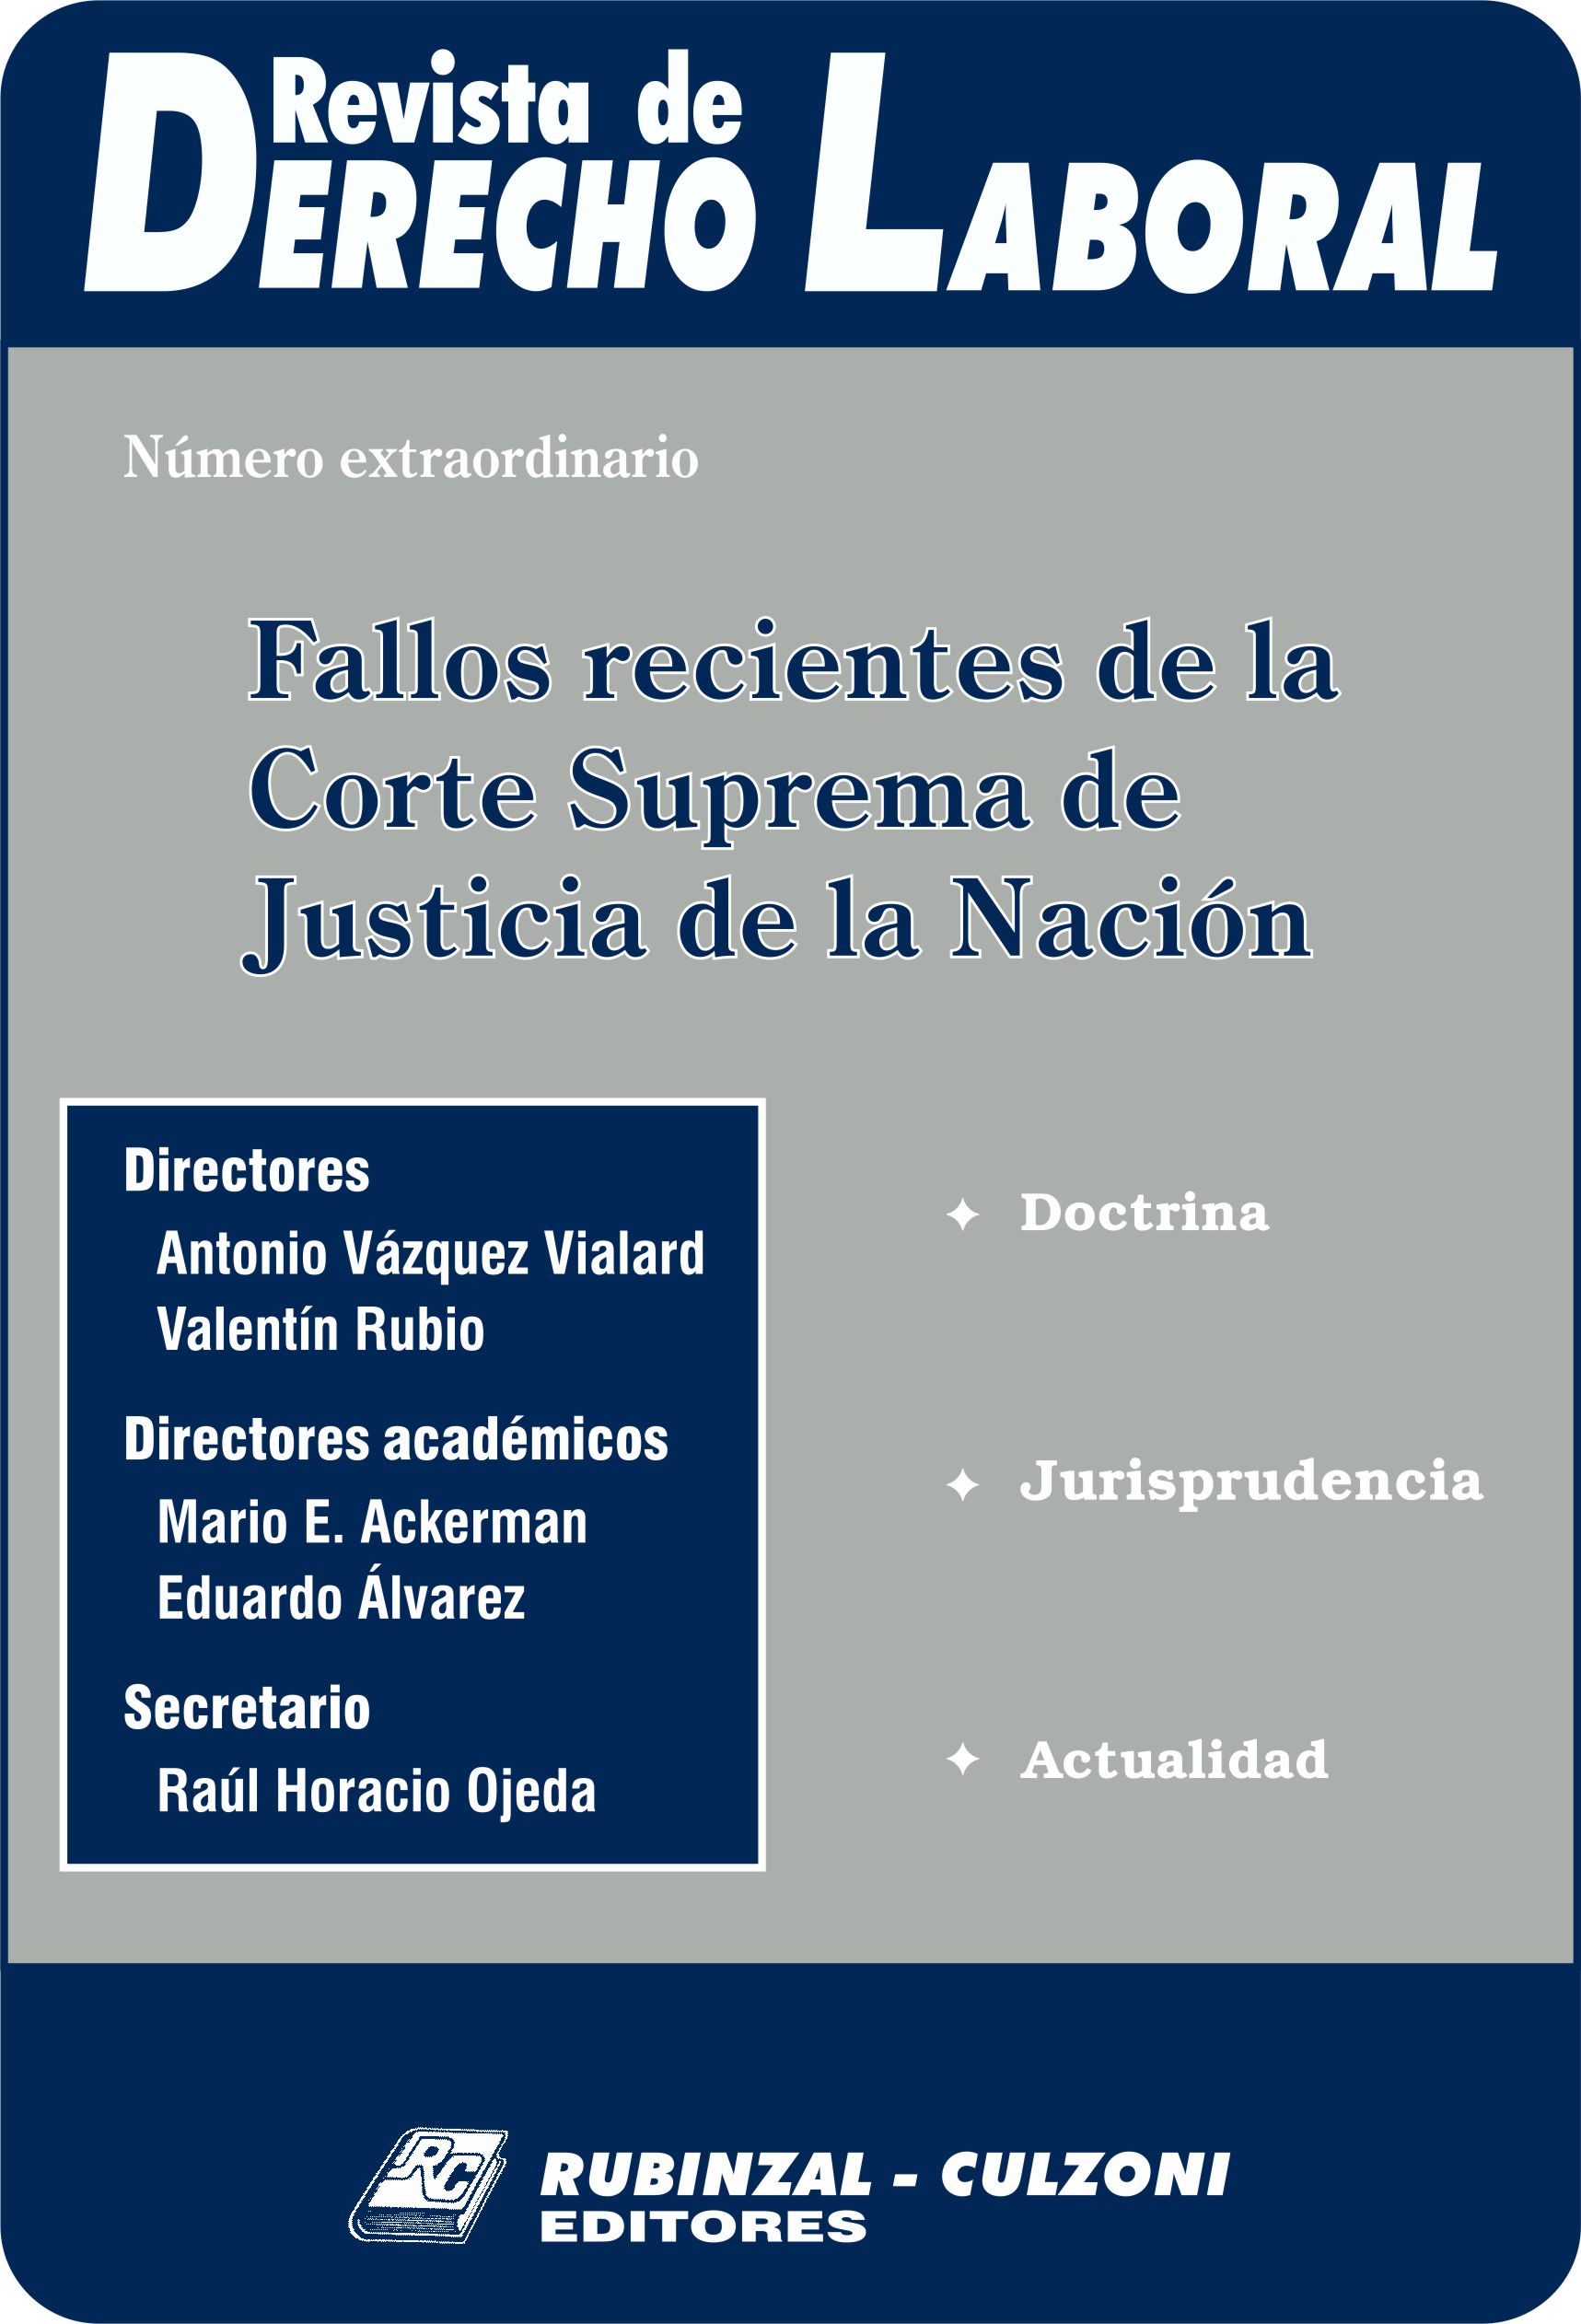 Revista de Derecho Penal Económico - Derecho Penal Tributario - IV